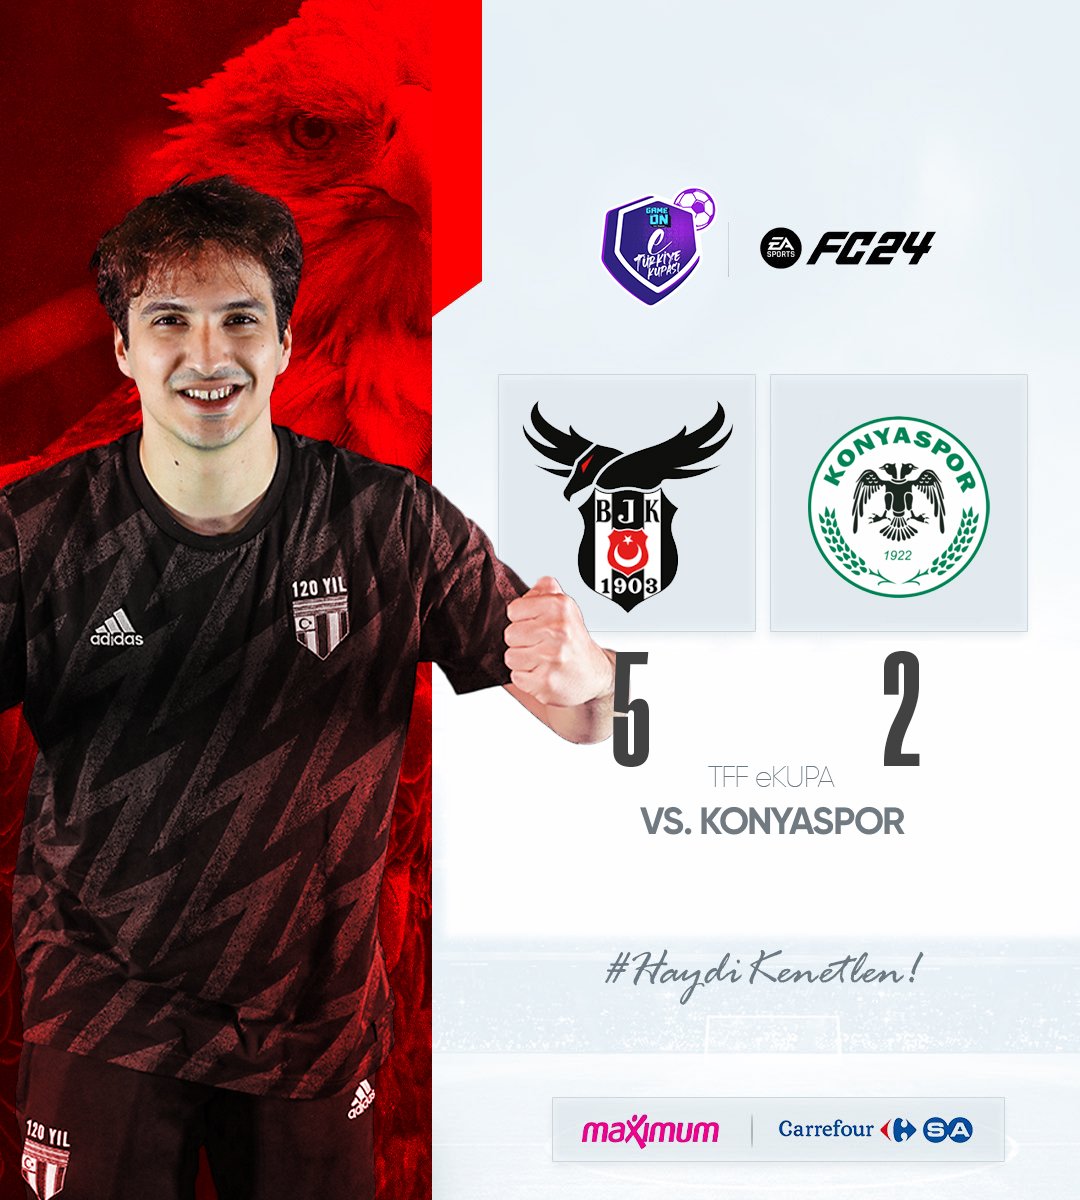 5 gollü galibiyet! 👊🏻 GAMEON eTürkiye Kupası'nda Konyaspor'a karşı 5-2 kazanıyoruz. 🖤🤍 Tebrikler! @janardaa 👏🏻 #BeşiktaşEsports | #HaydiKenetlen